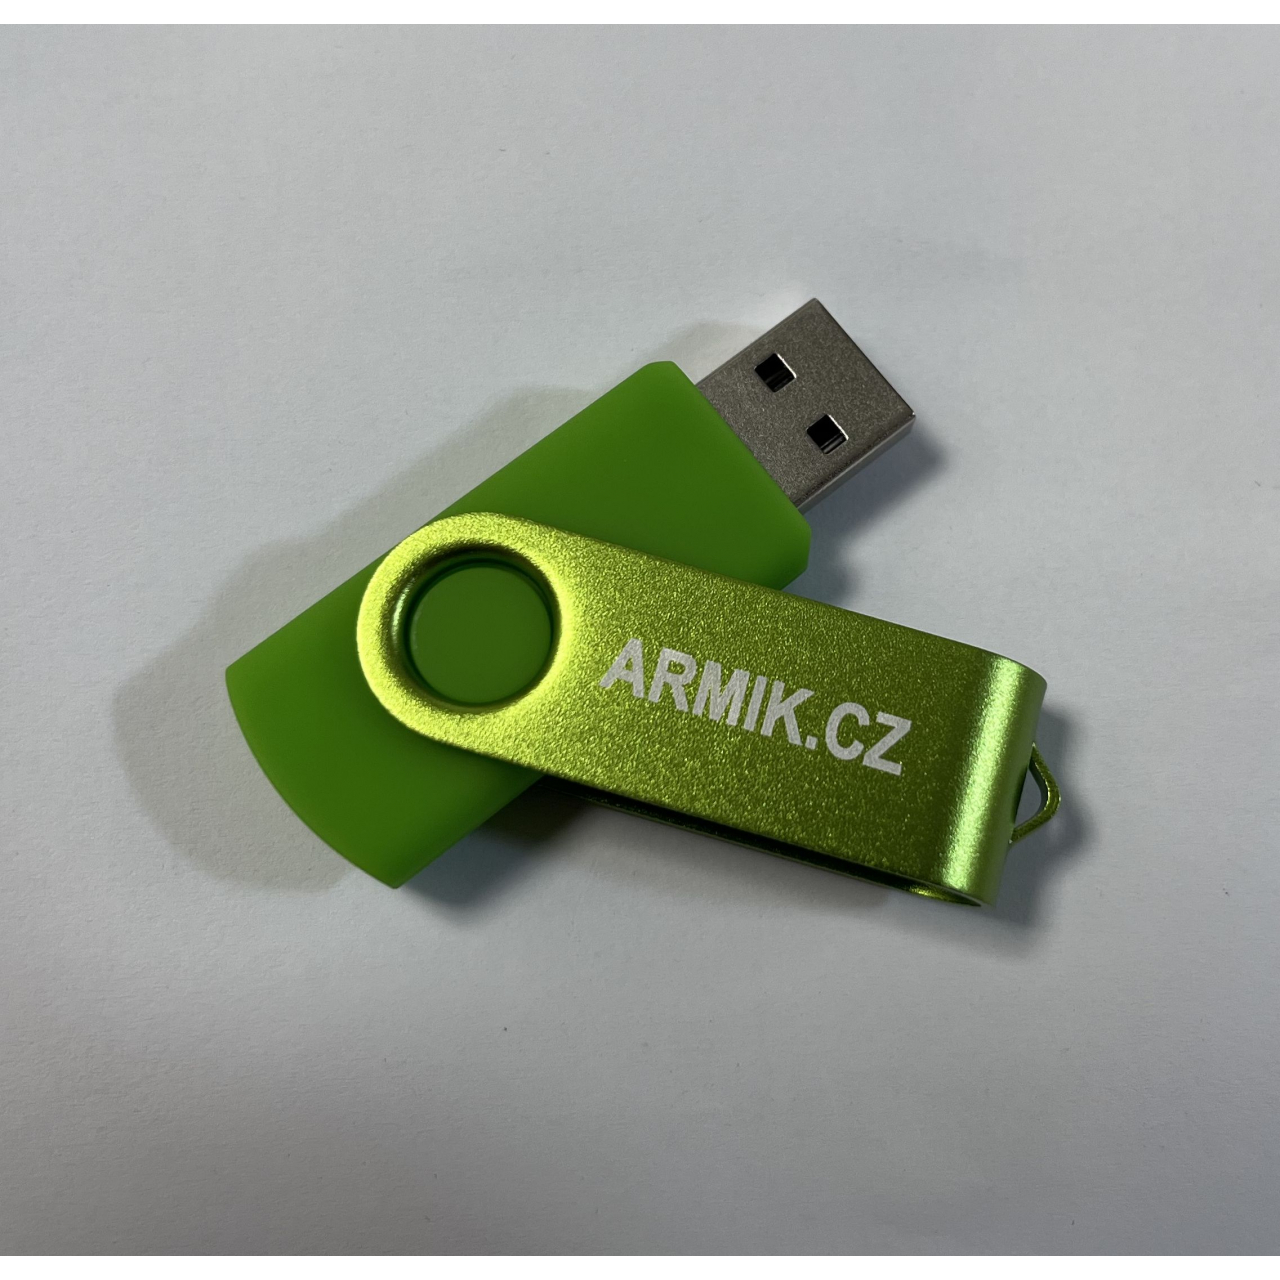 USB flash disk Armik.cz 256 MB - zelený